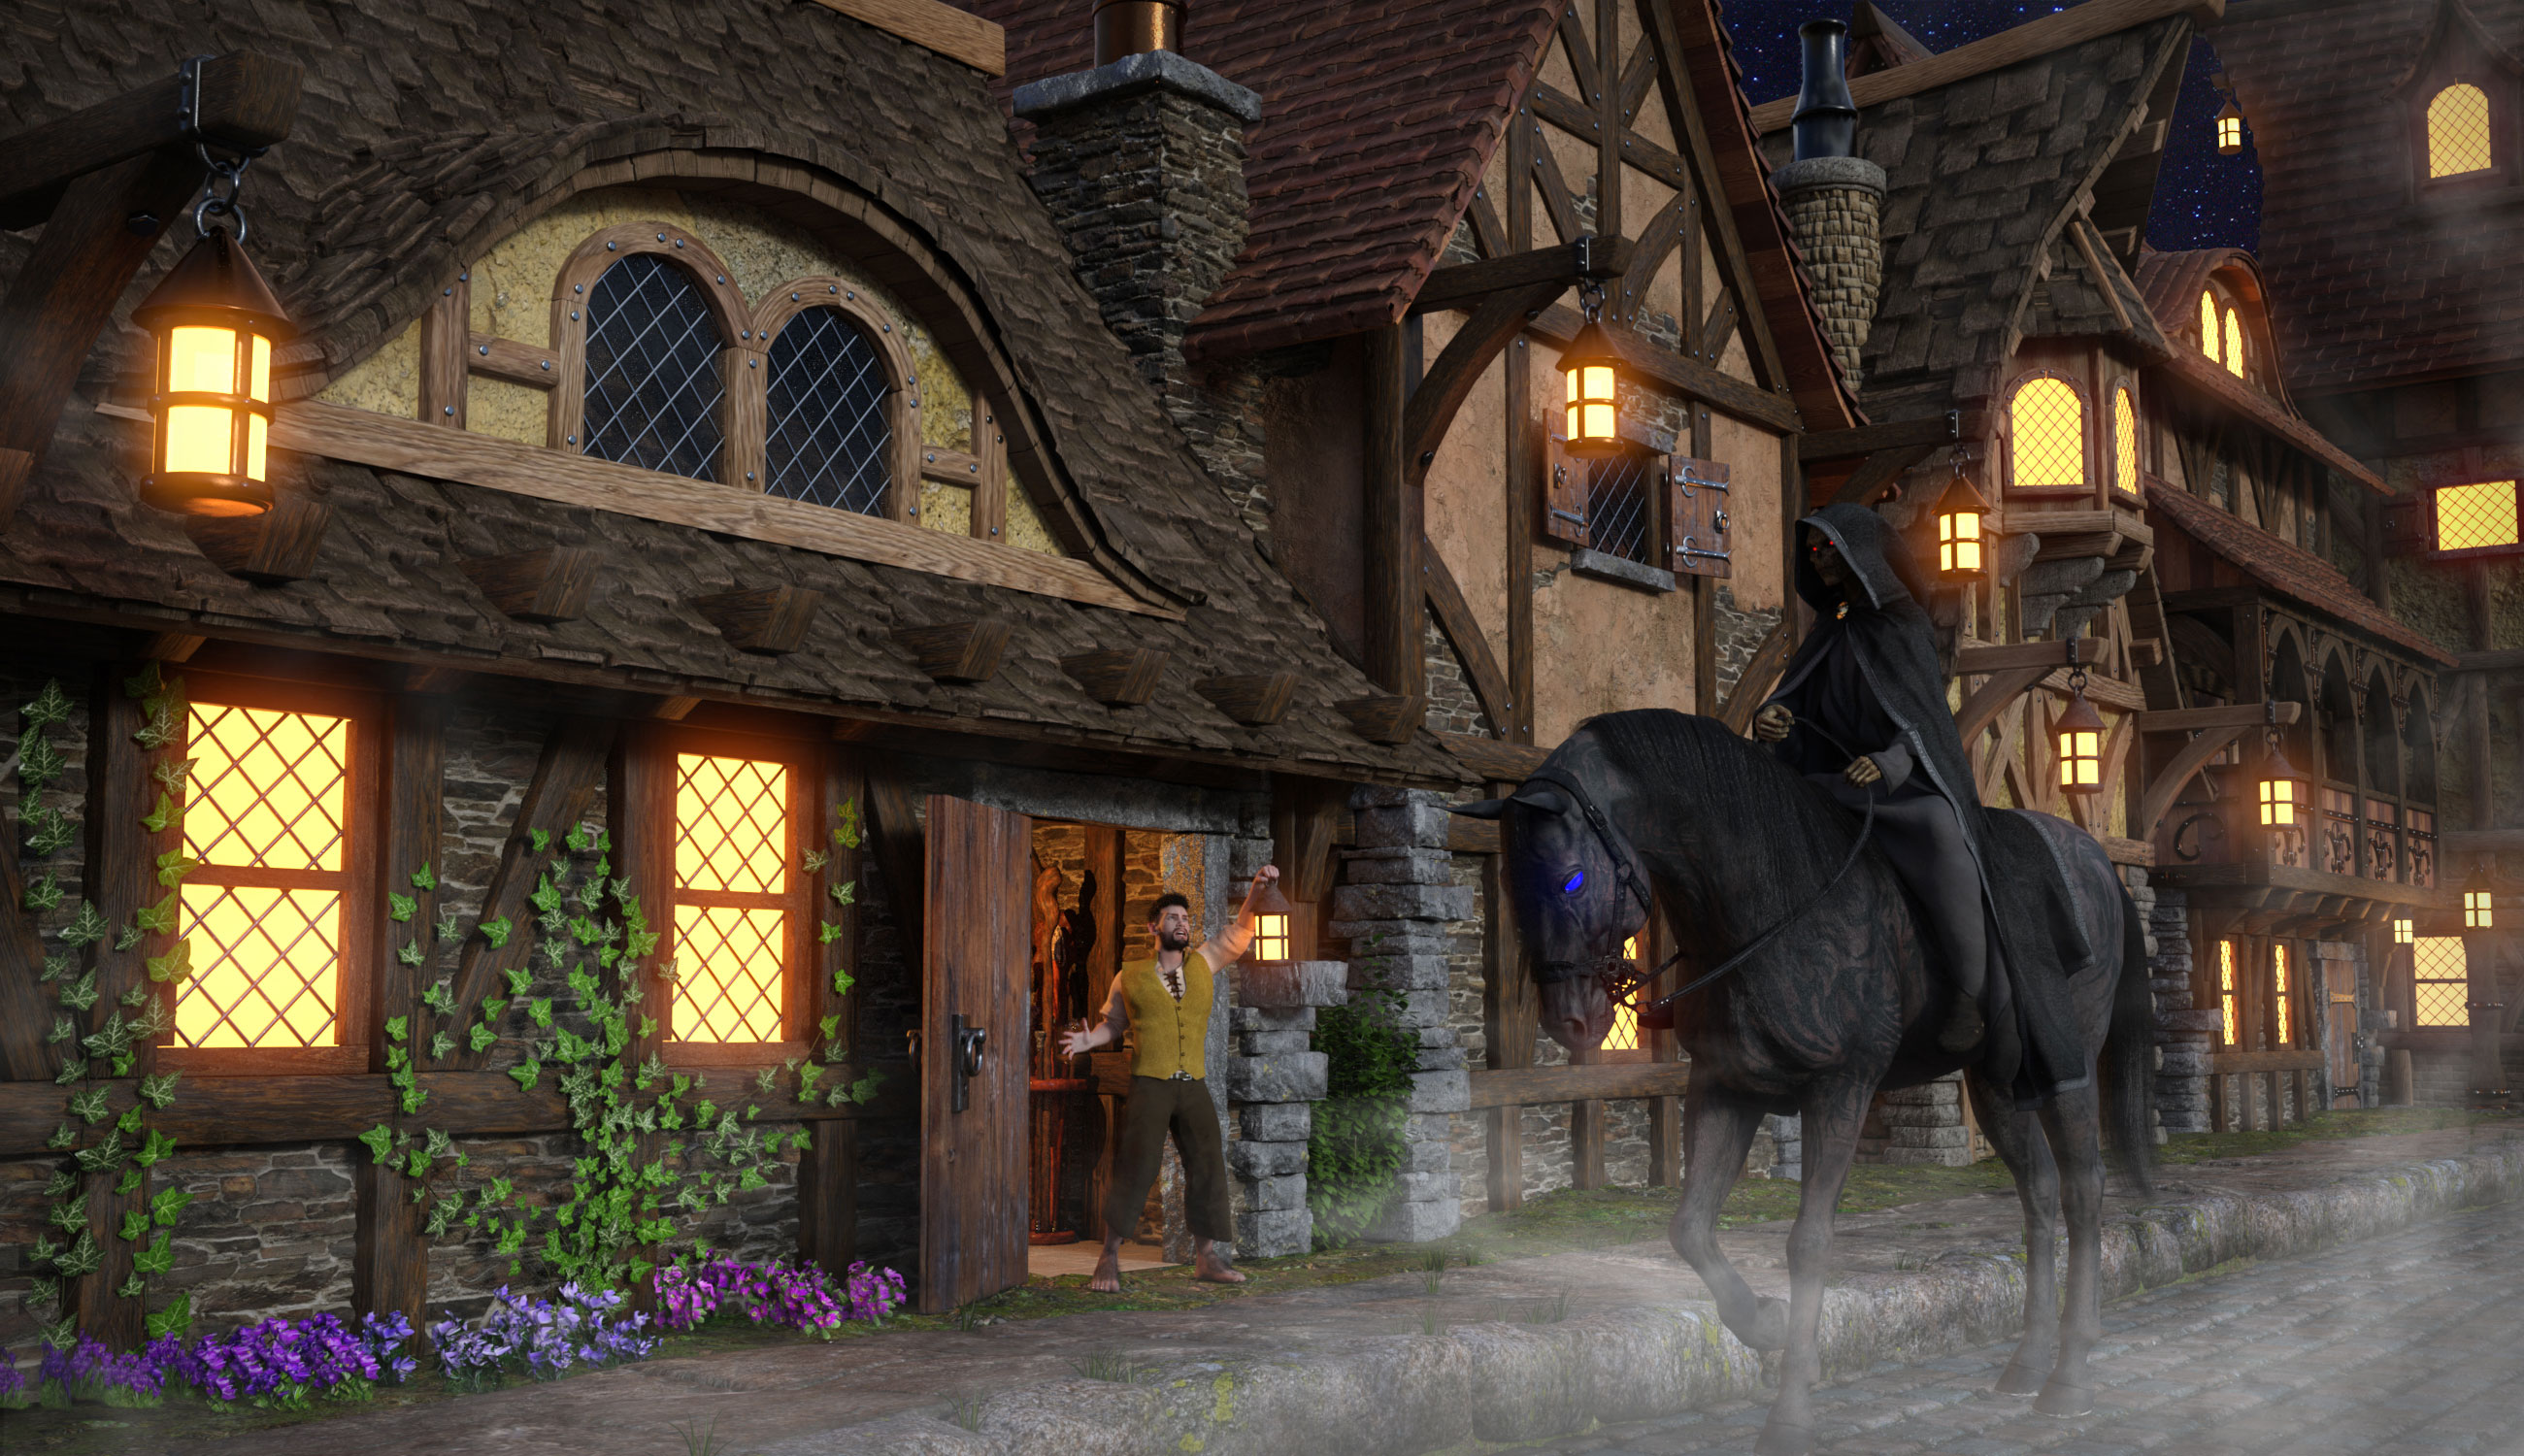 Medieval Village Houses Construction Set by: The Alchemist, 3D Models by Daz 3D